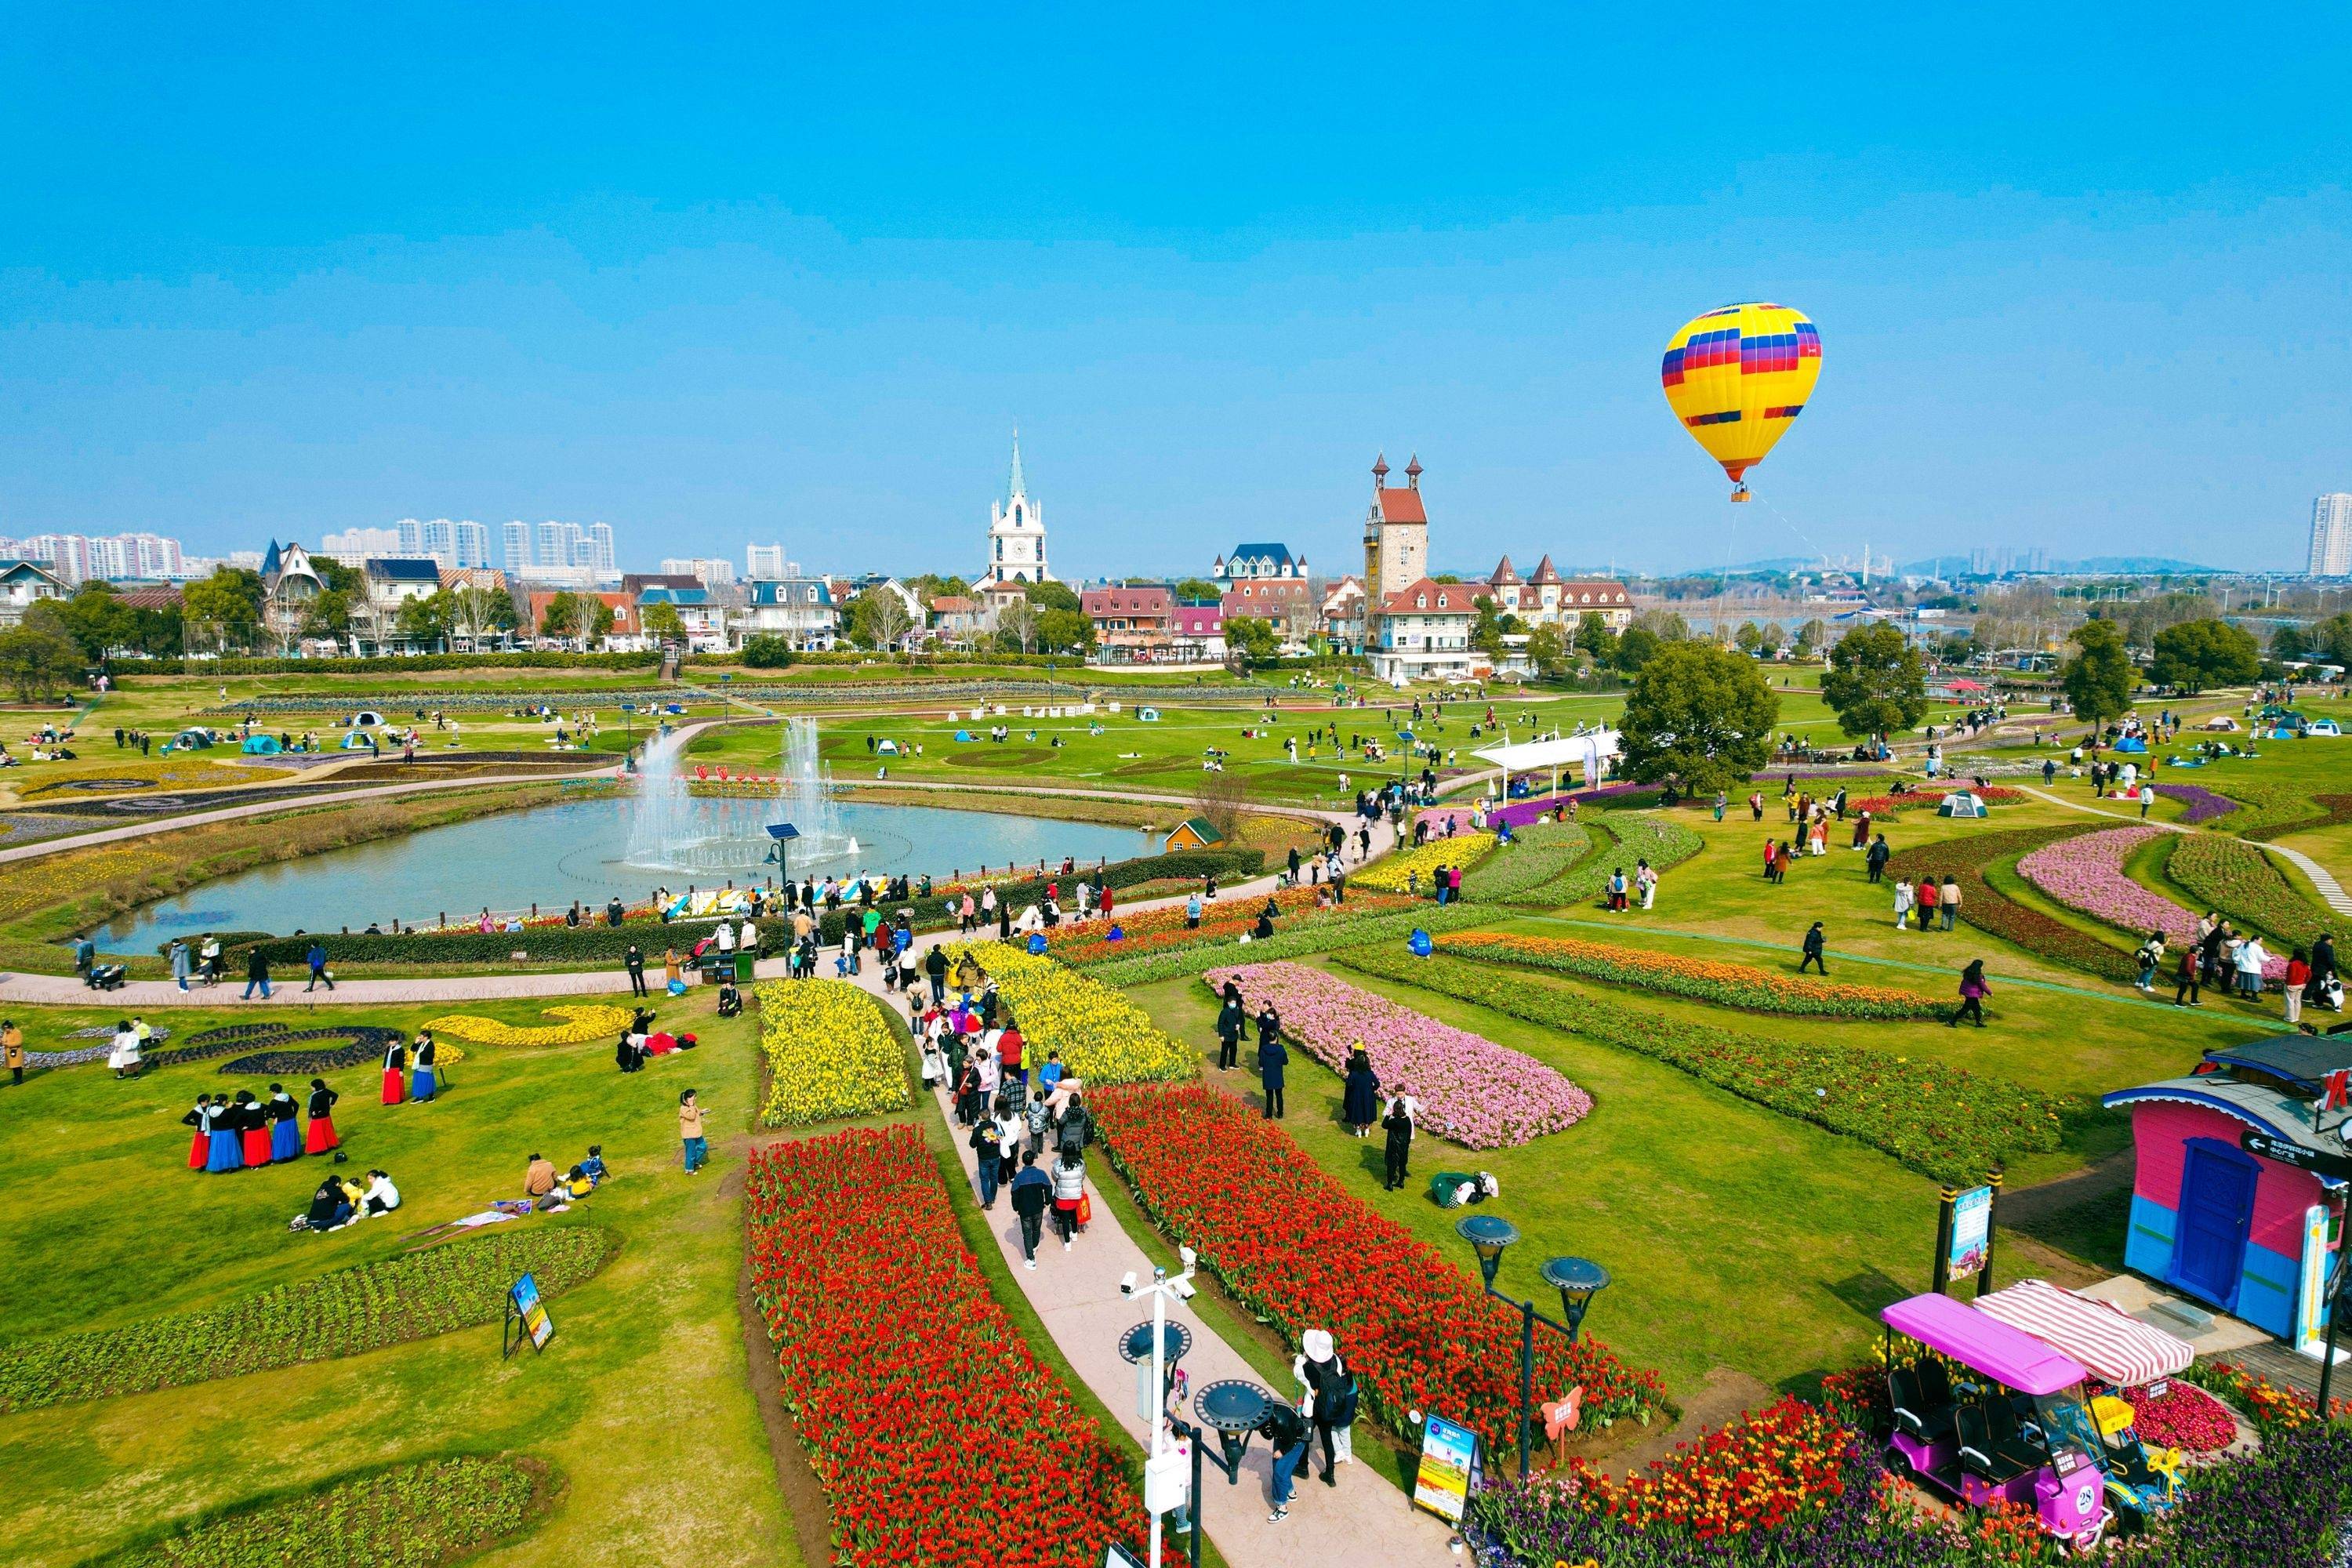 蔡甸花博汇景区,各种鲜花竞相绽放,游客还可以乘坐热气球空中赏花